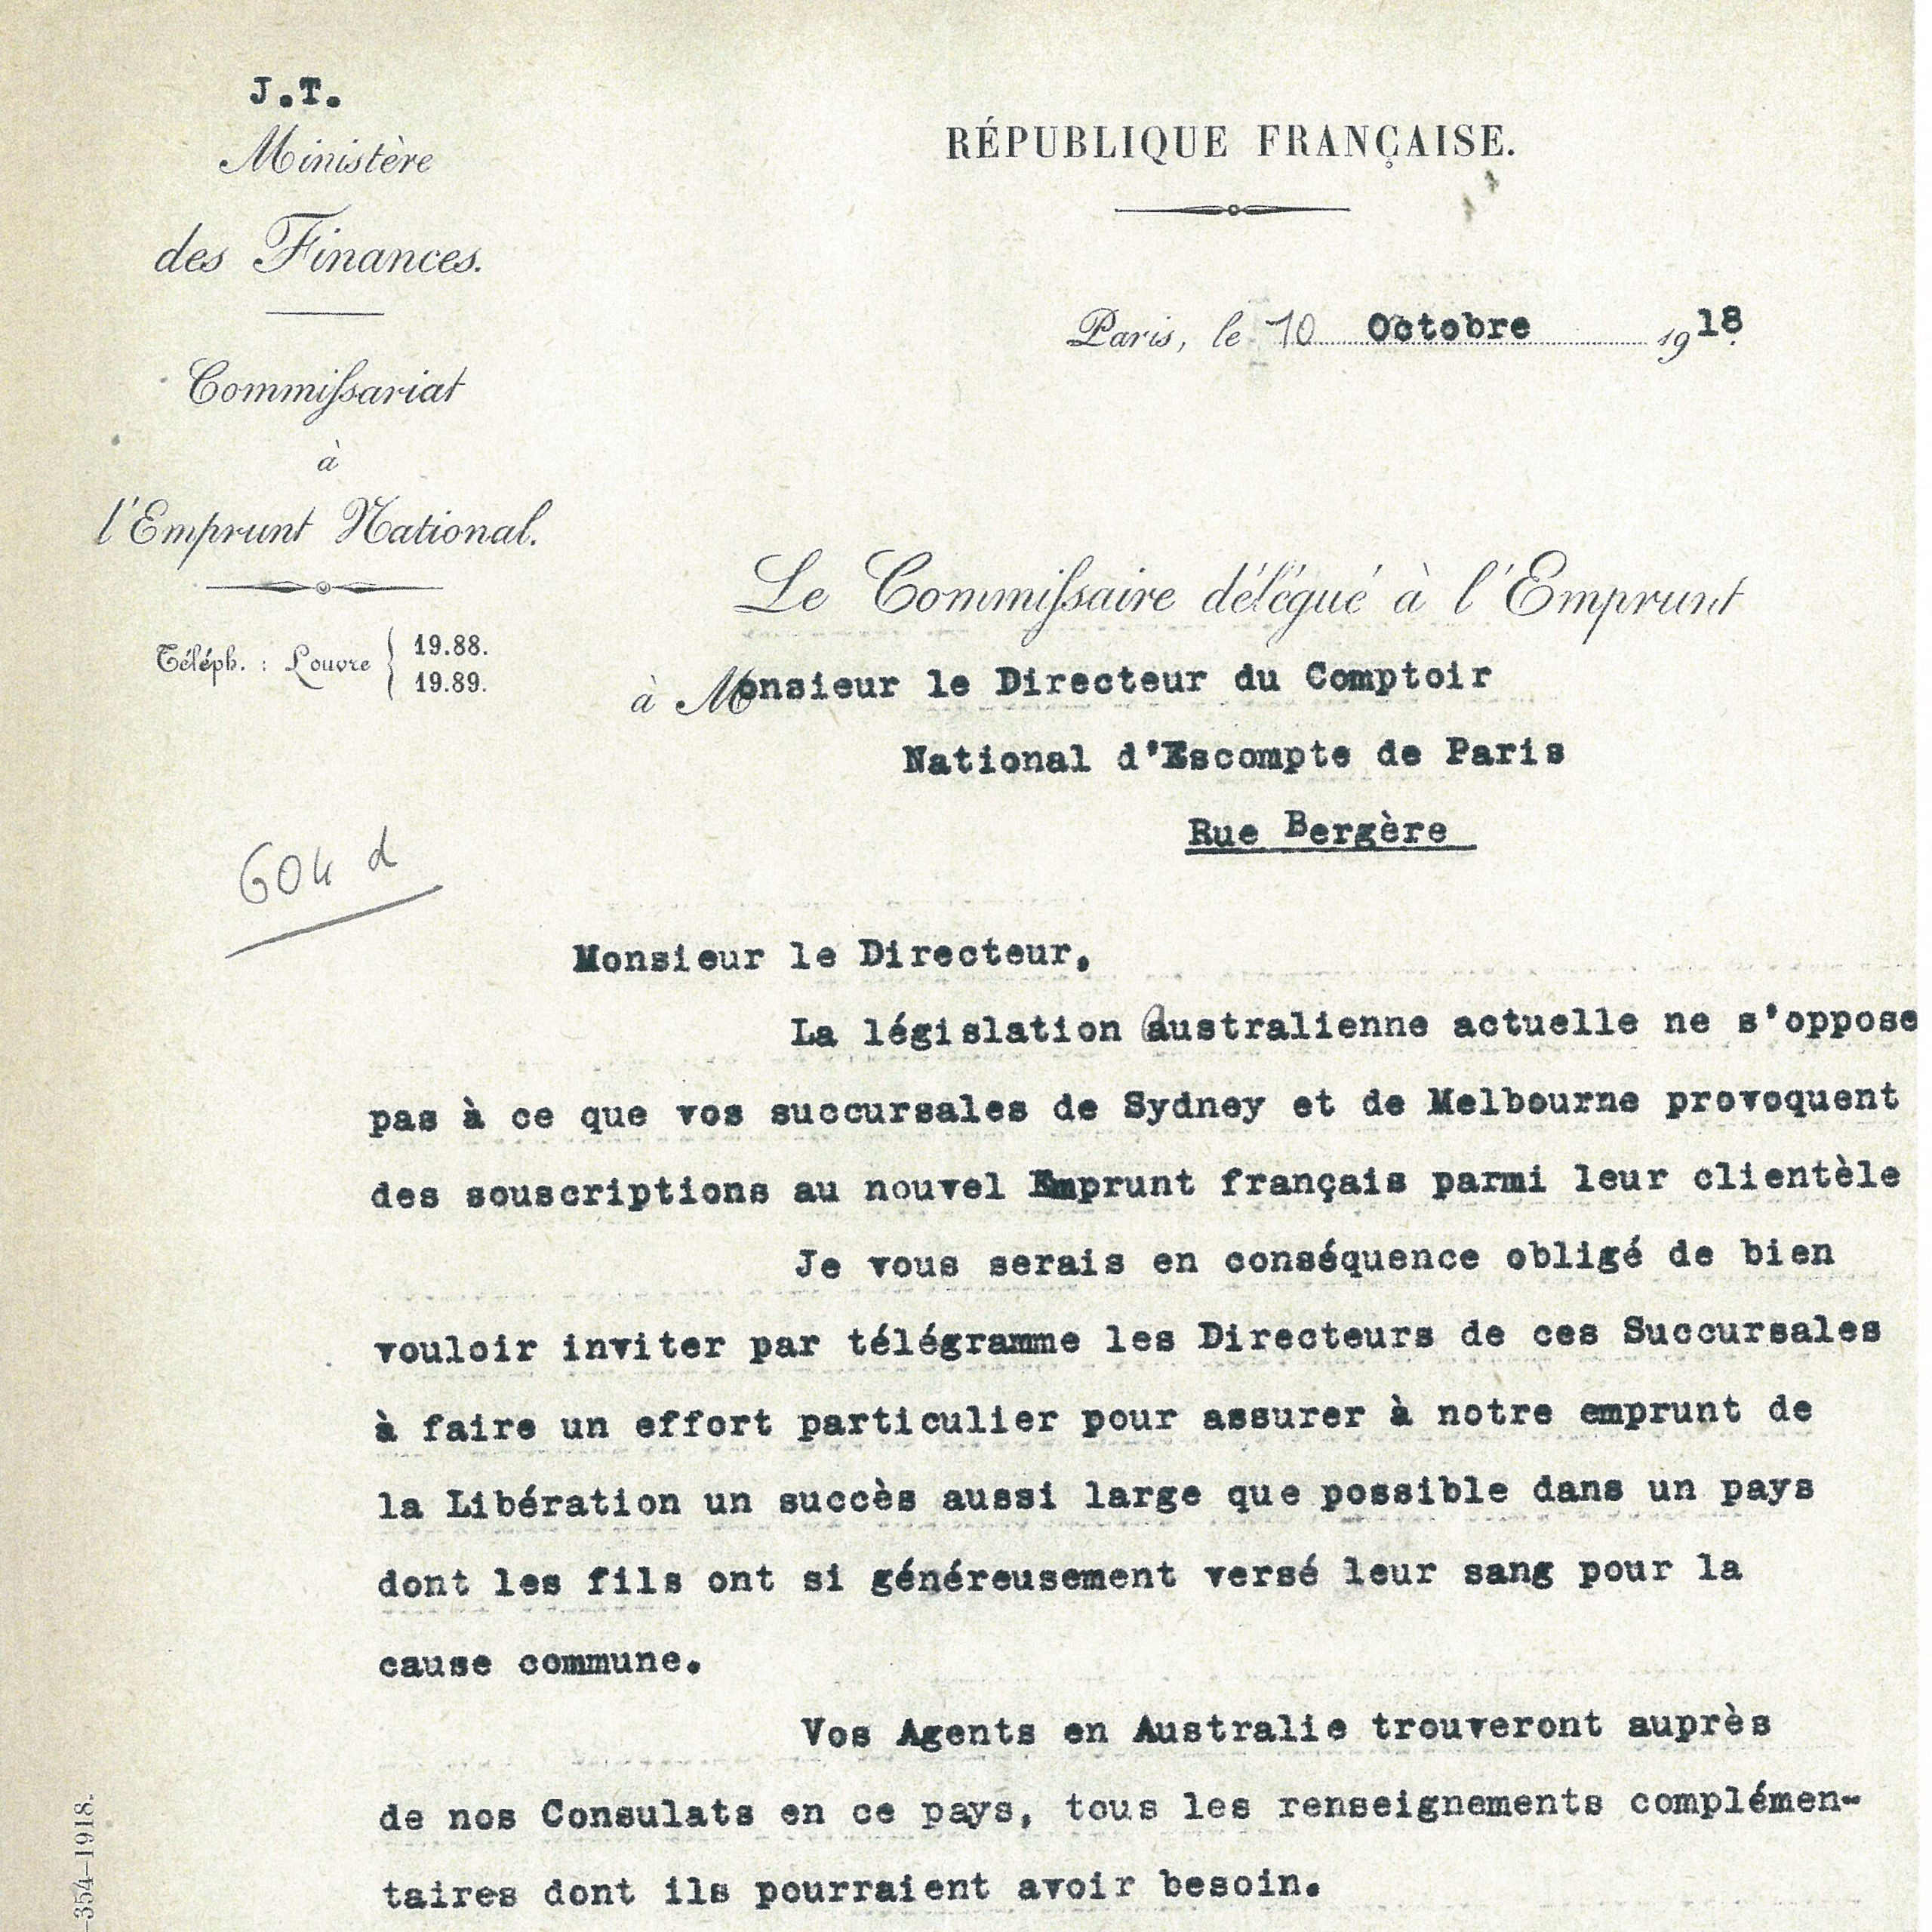 Lettre du Ministère des Finances du 10 octobre 1918 adressée au Directeur du Comptoir national d'escompte de Paris - Archives historiques BNP Paribas